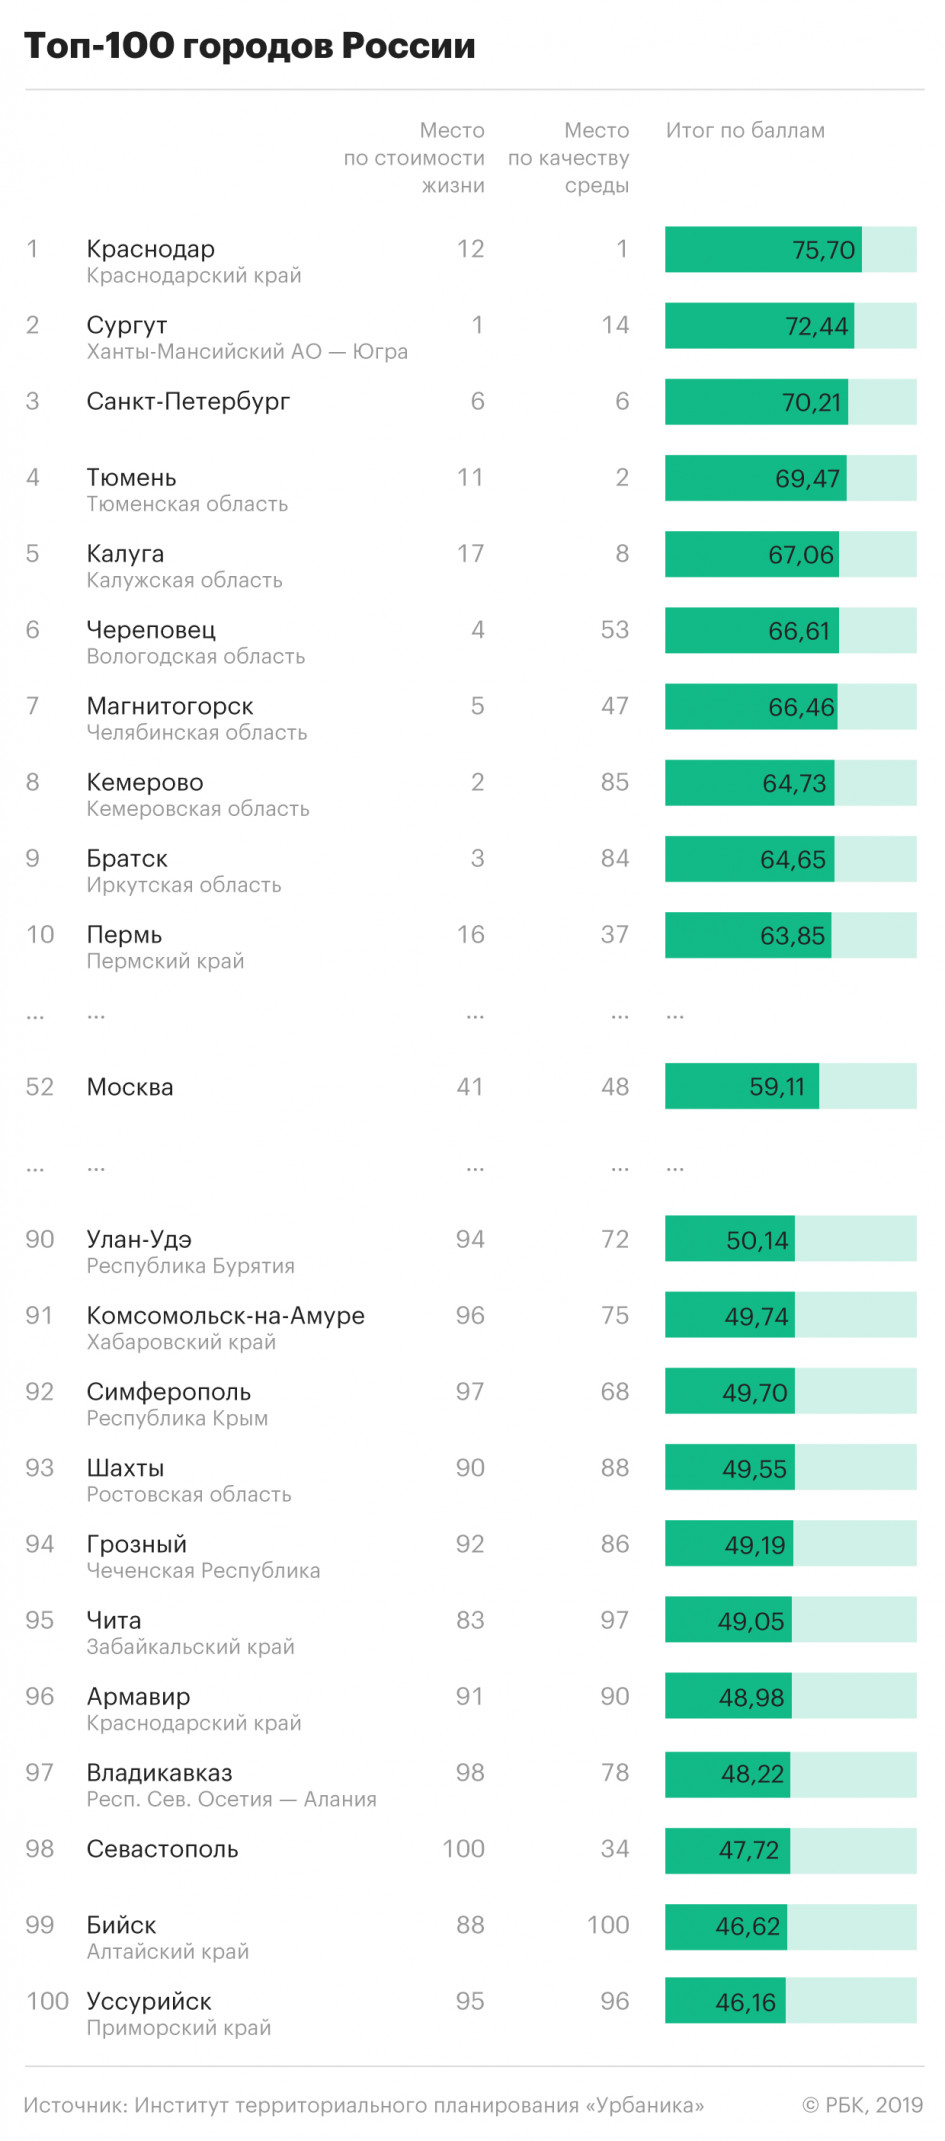 Статистически комфортные города России 